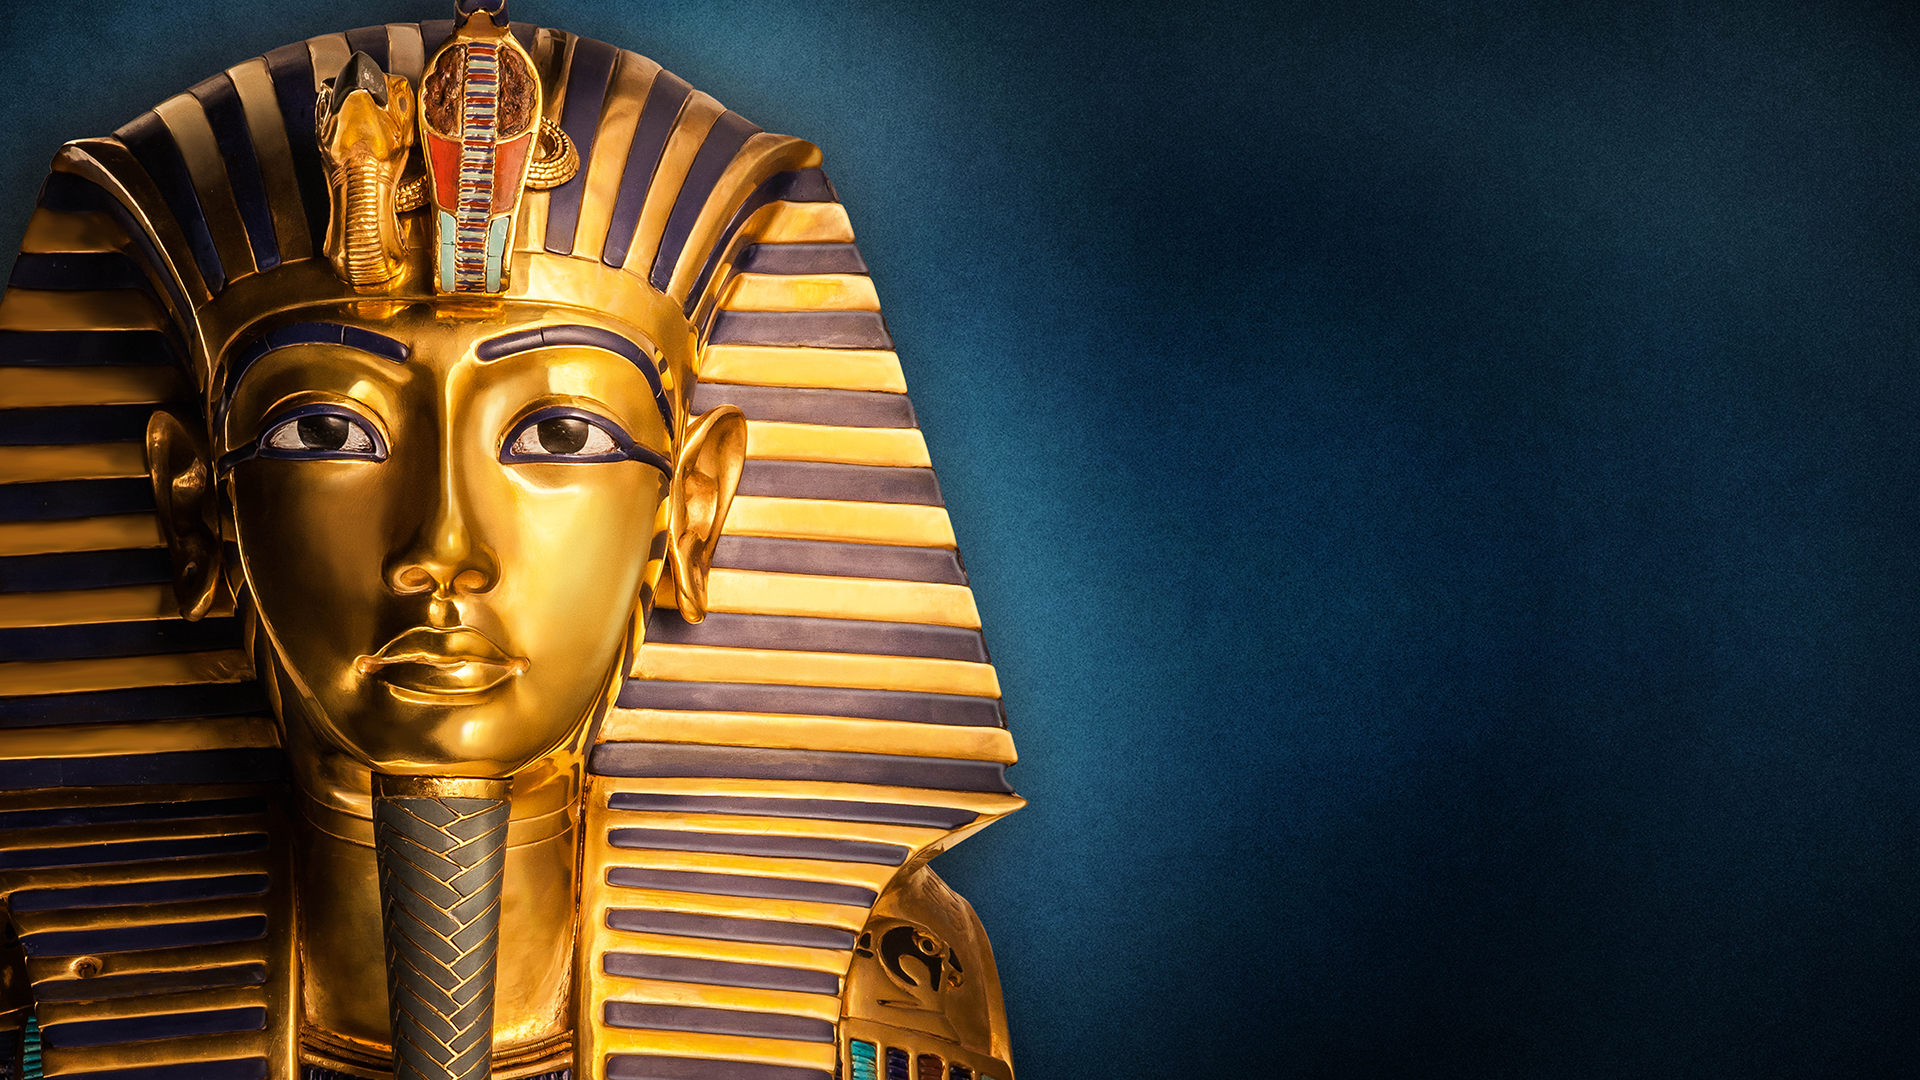 Tutankhamun exhibition website banner